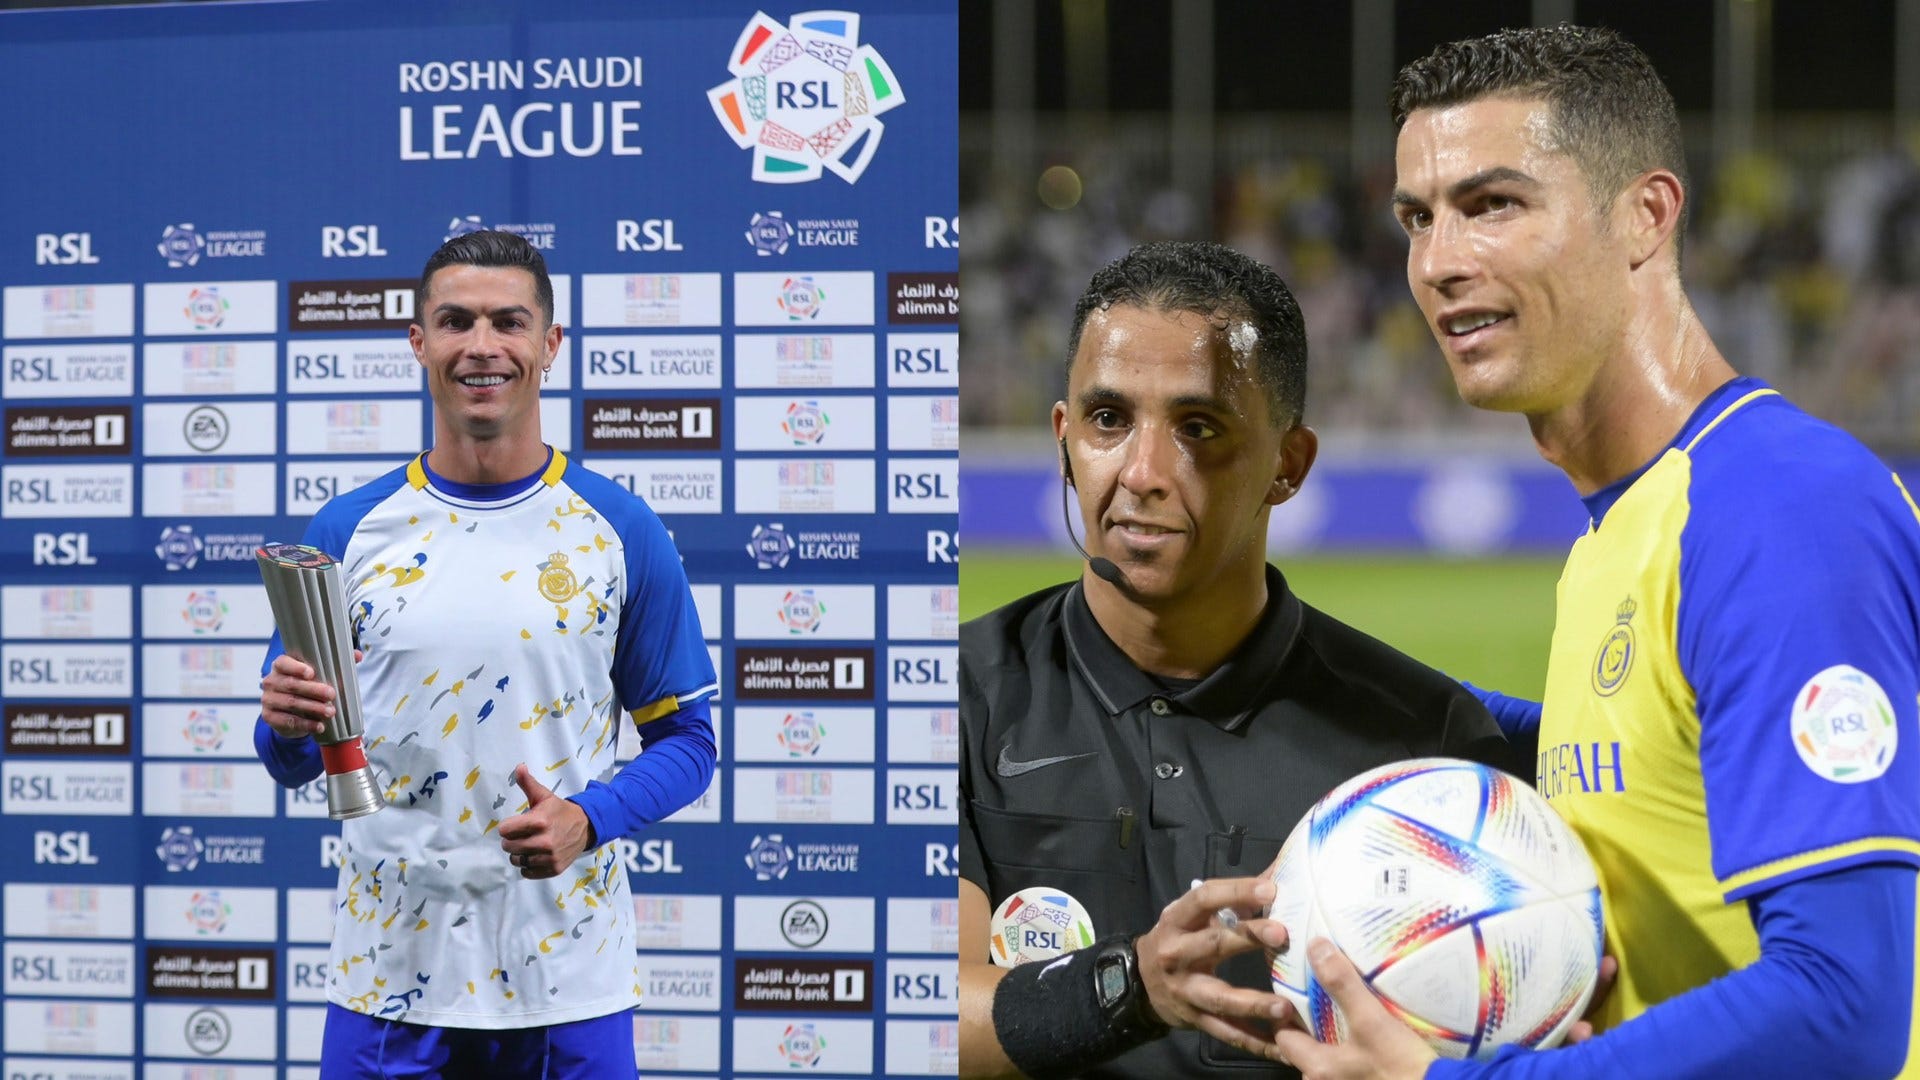 Ronaldo al Nasr. Saudi vs MLS. Saudi Pro League spending.